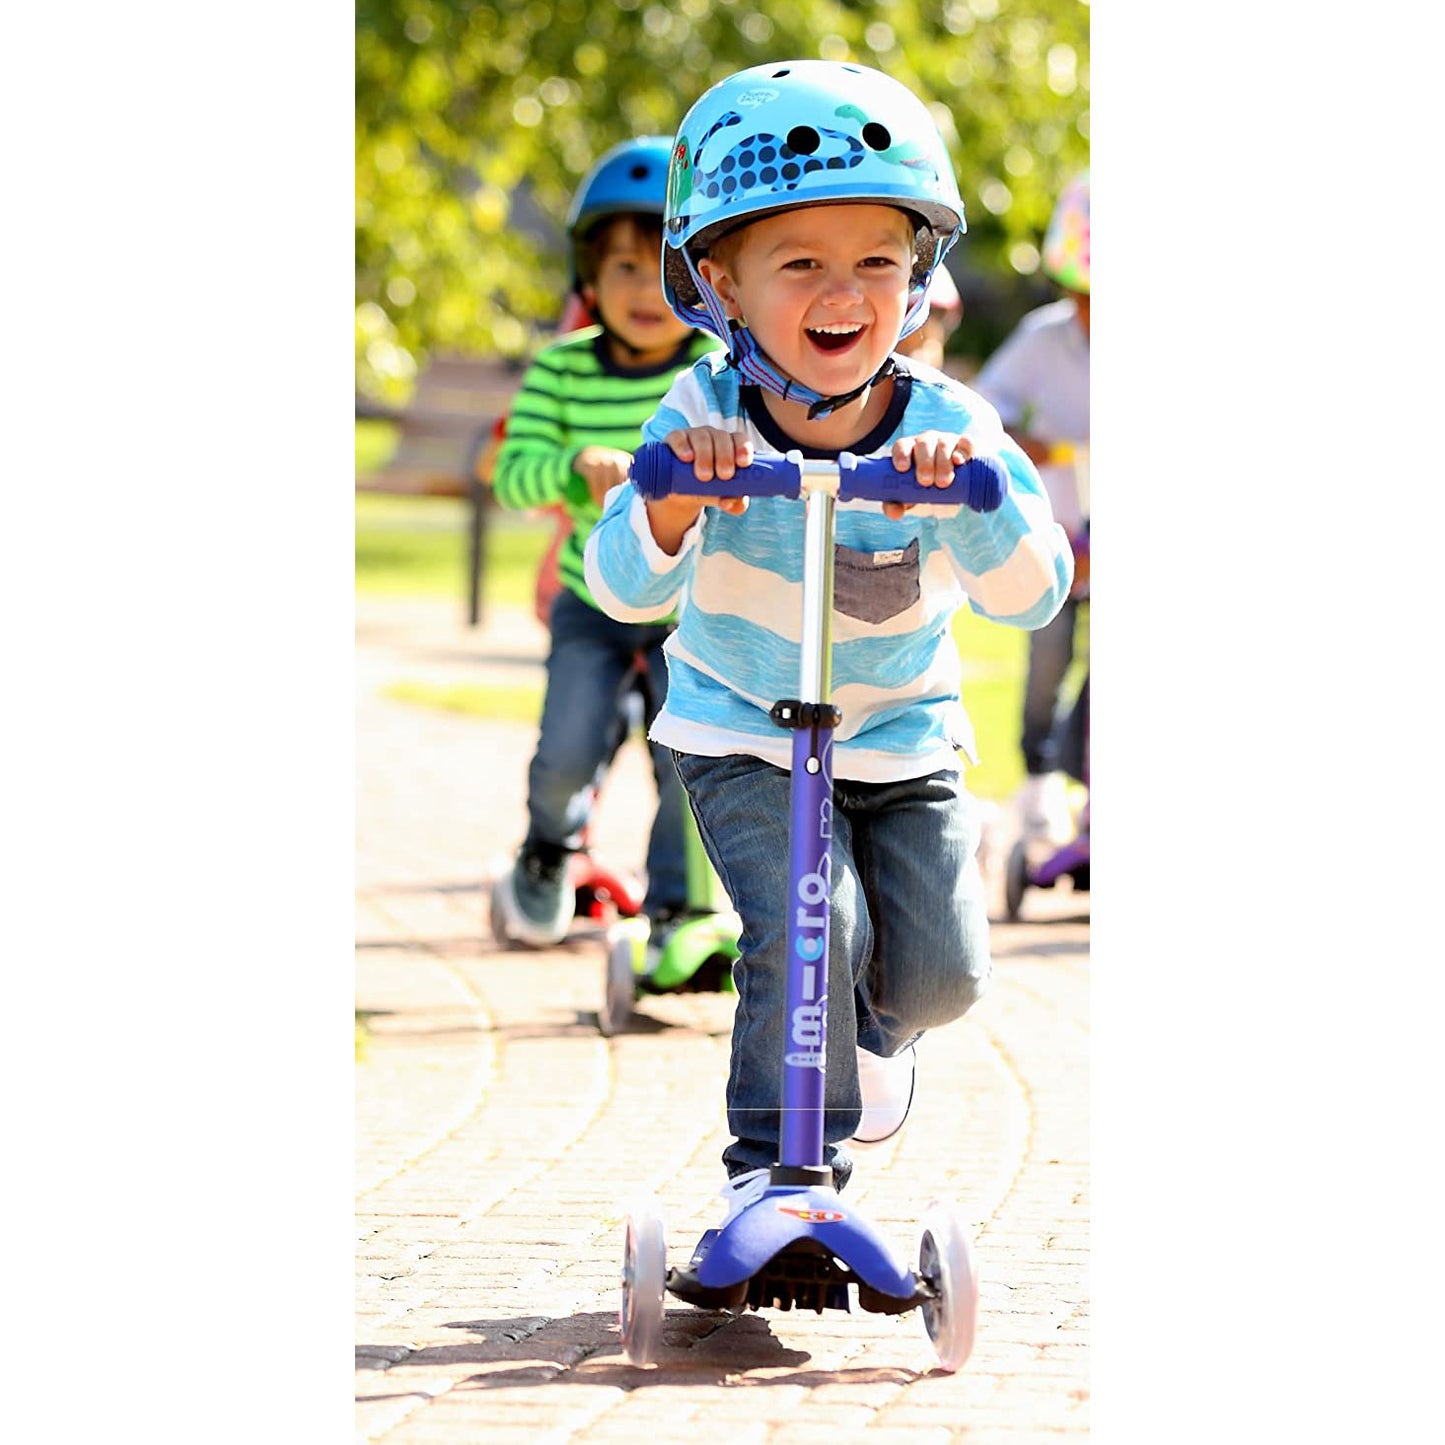 Little boy riding Micro Kickboard Mini Deluxe - Blue